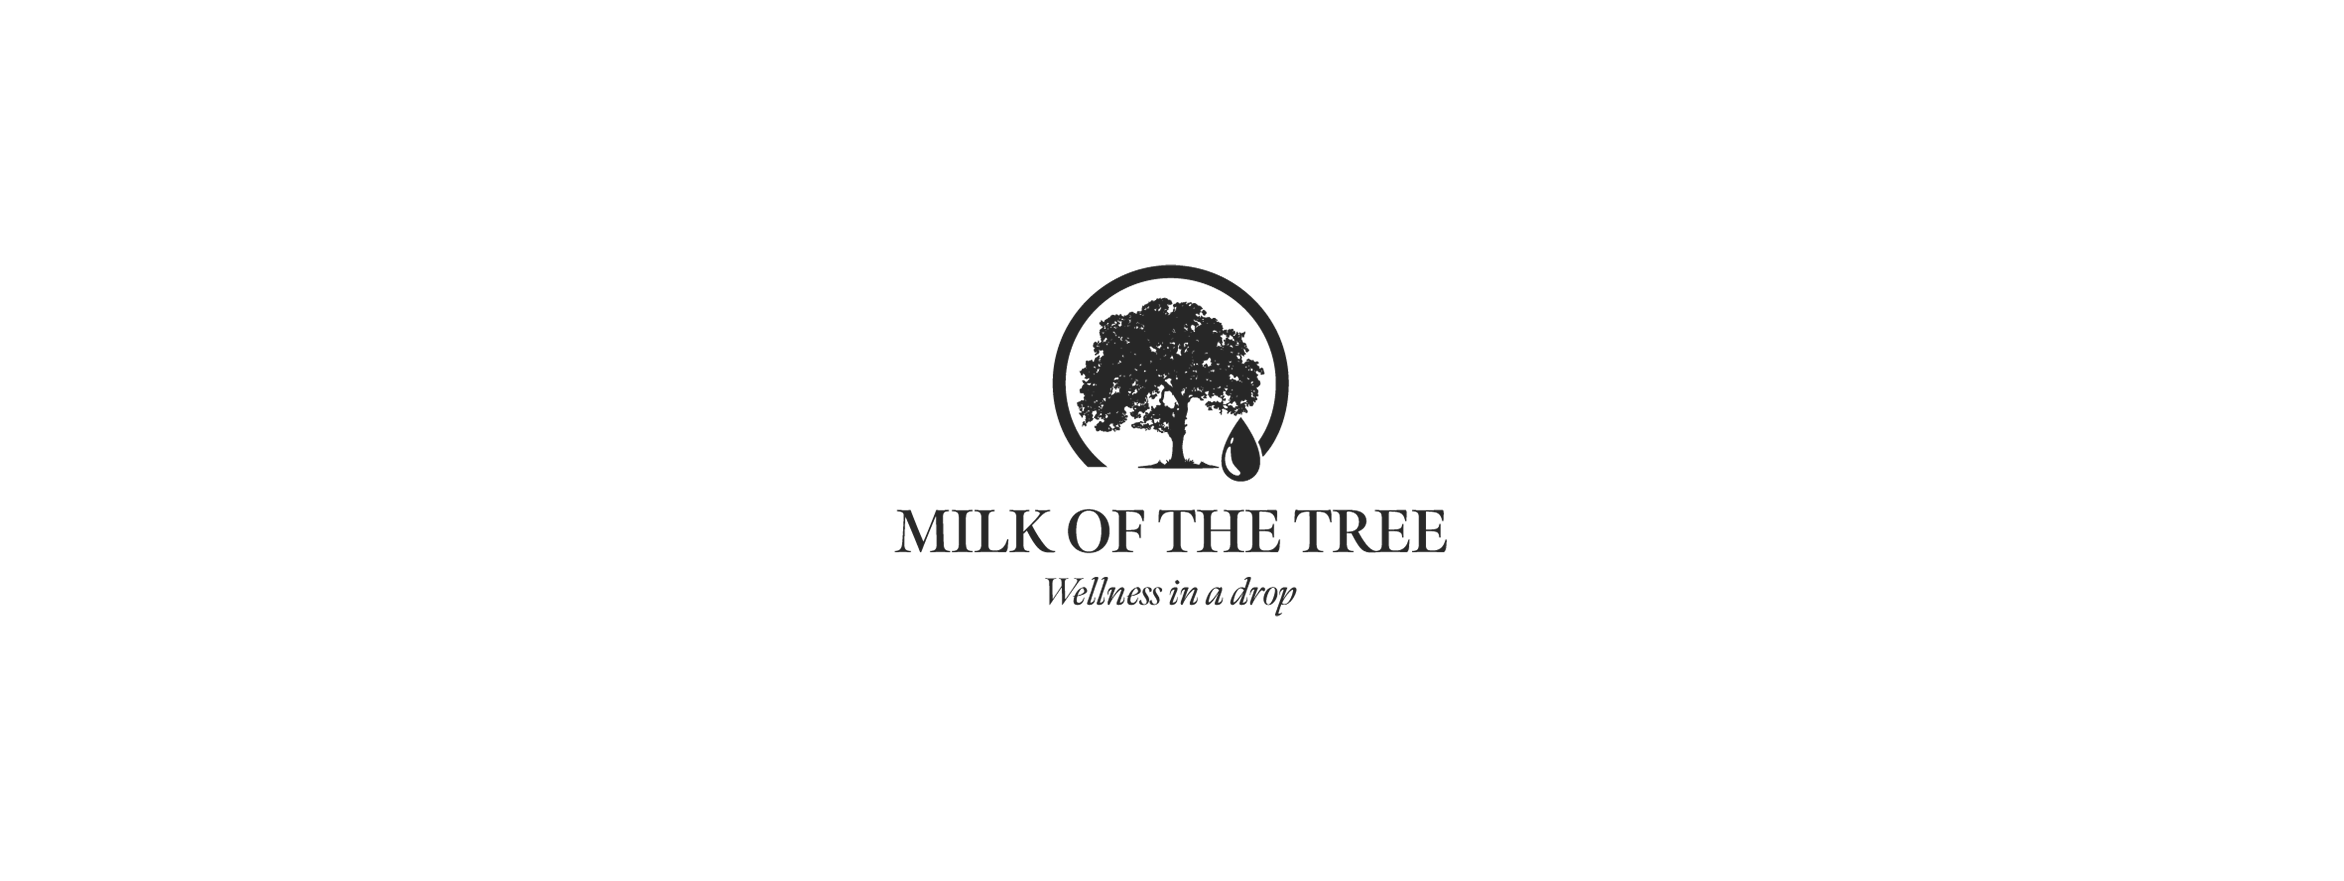 Milk of the Tree by JAVI AGENCY